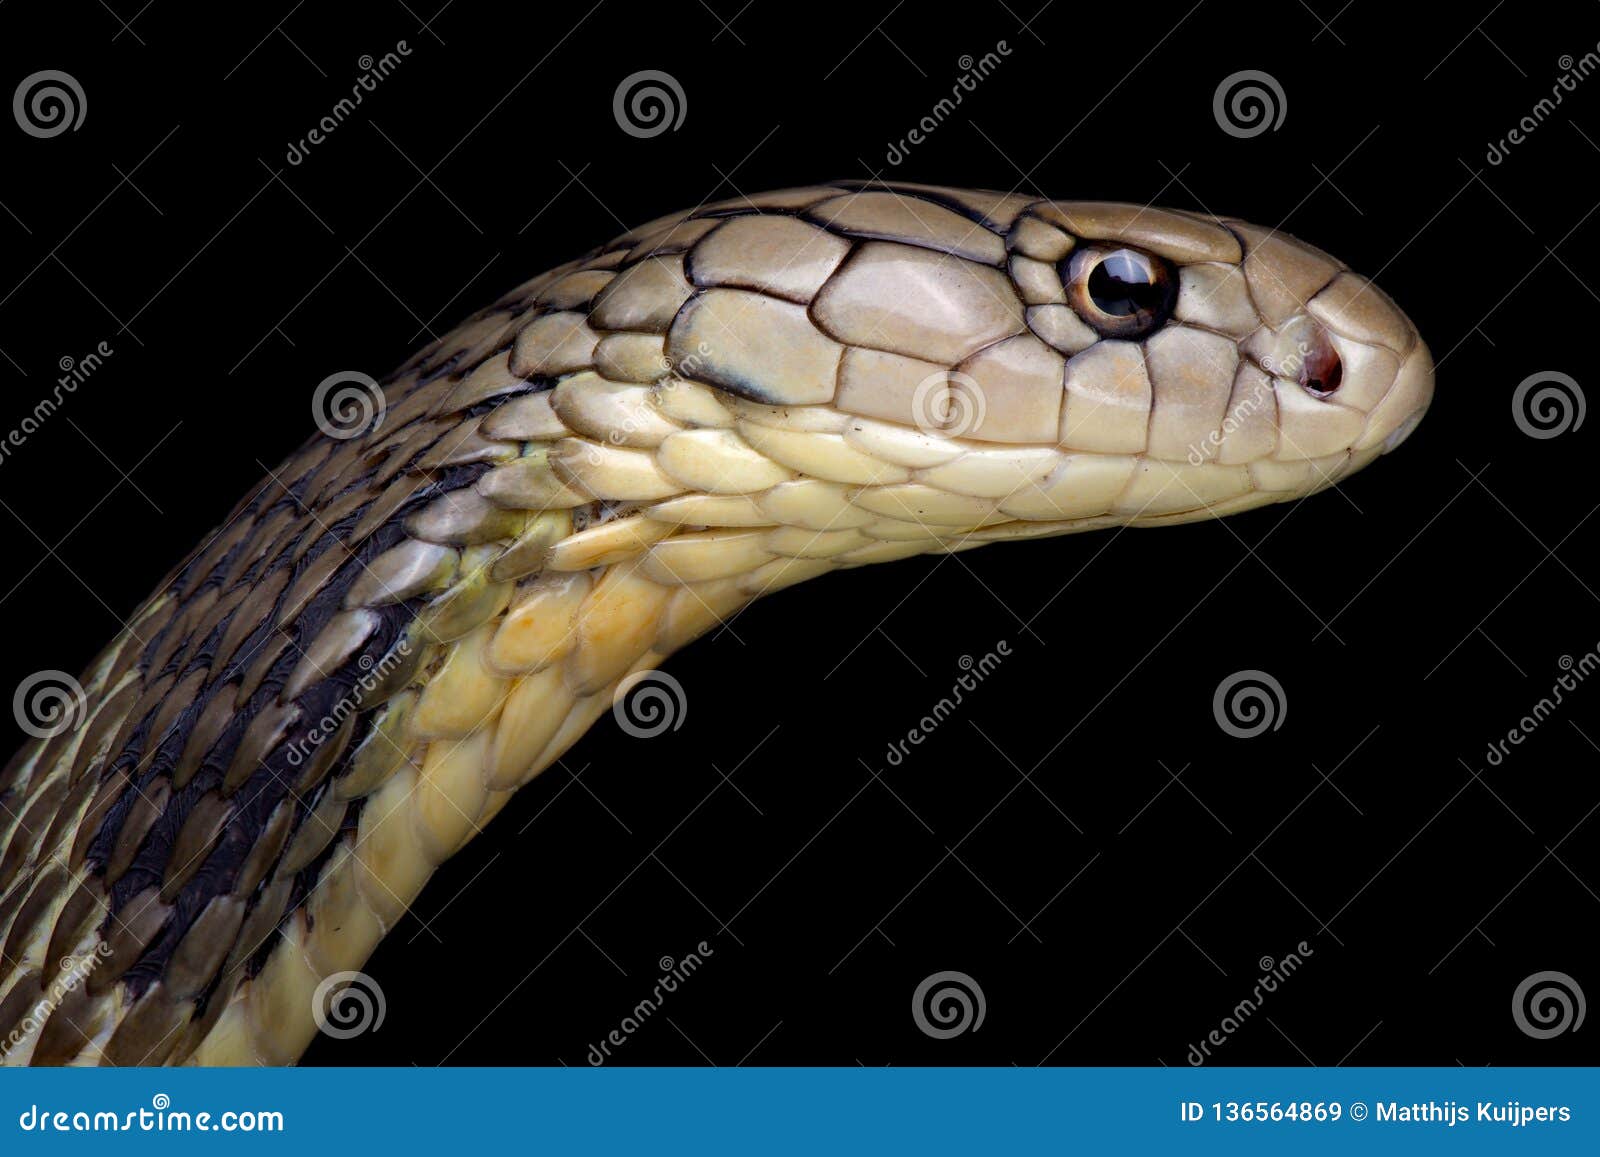 Chiński królewiątko kobry Ophiophagus Hannah jest ampułą, wysoce venomous, węży gatunki